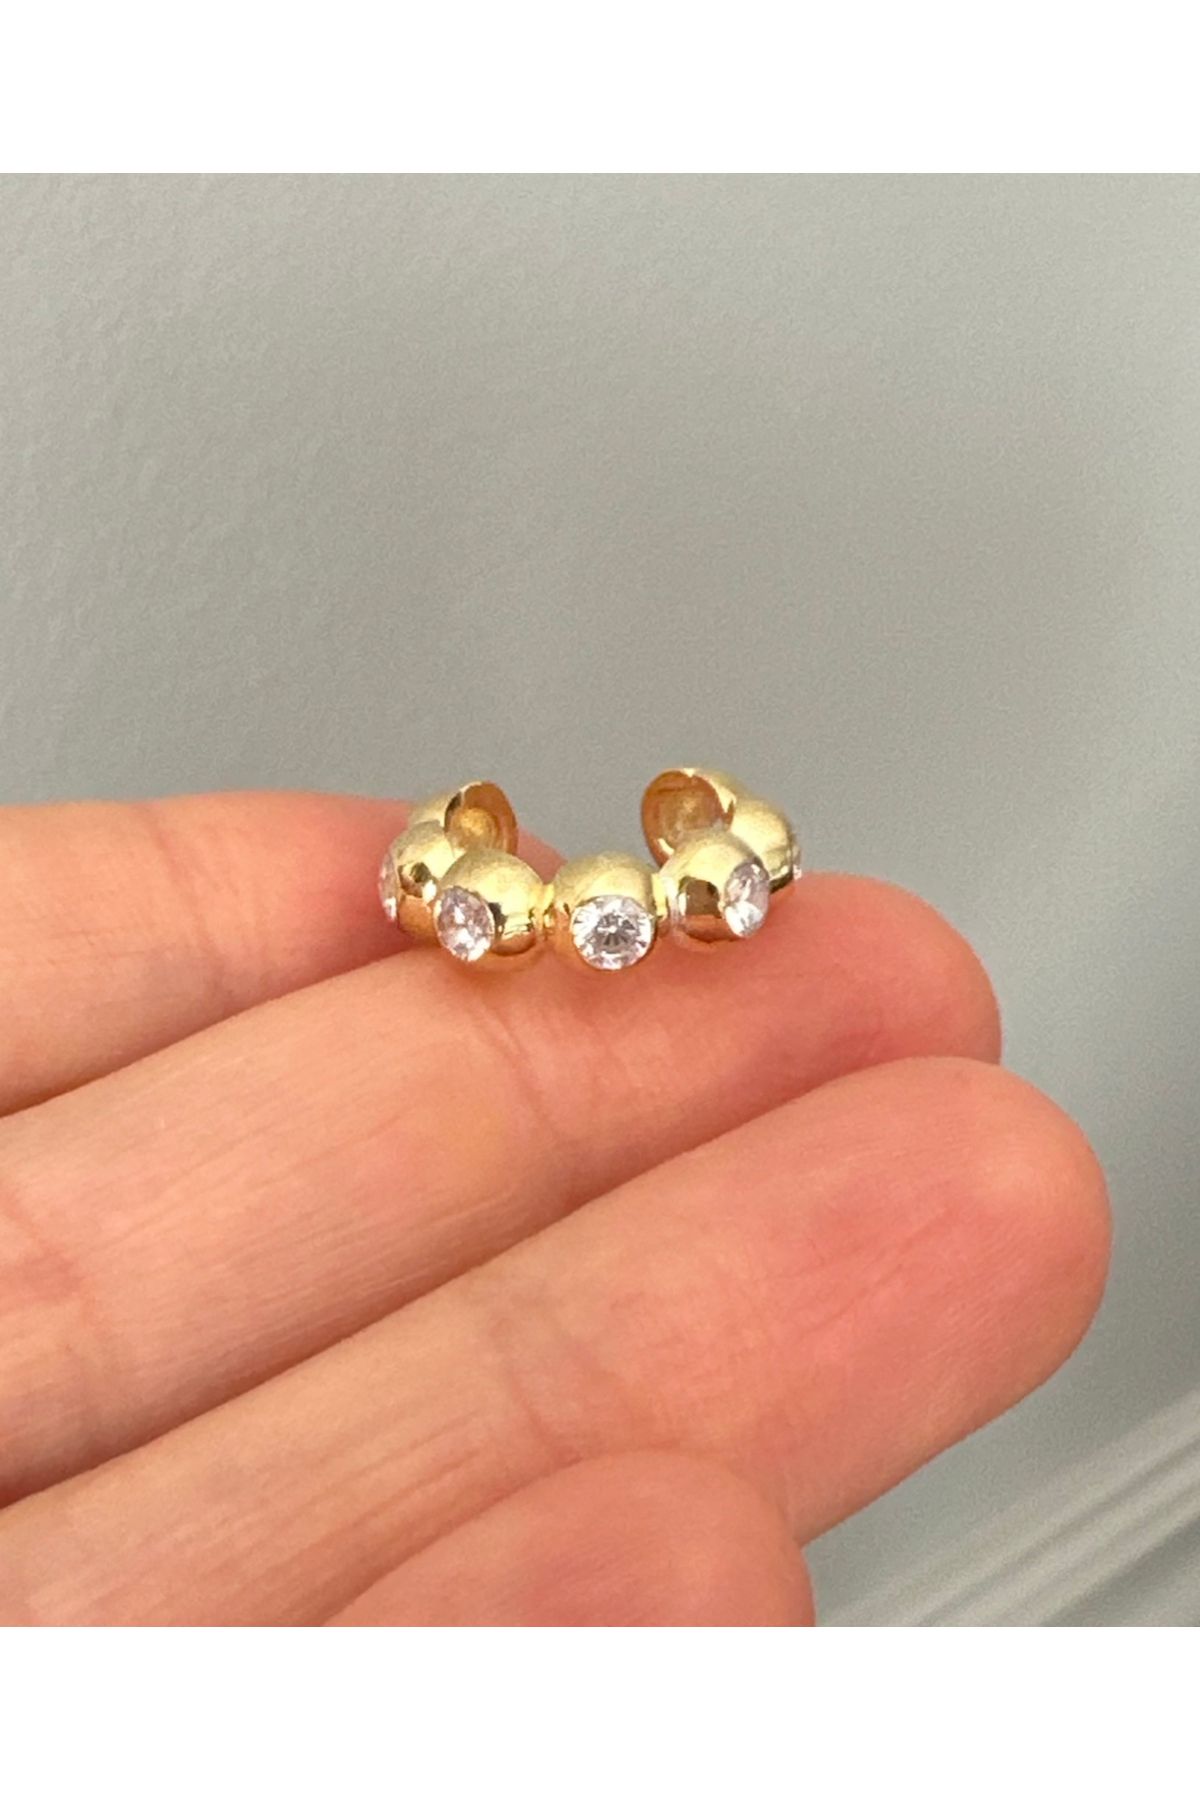 emy by emel luxury silver jewelry Altın Kaplama Taşlı Bubble Kıkırdak Küpesi Ear Cuff 925 Ayar Gümüş